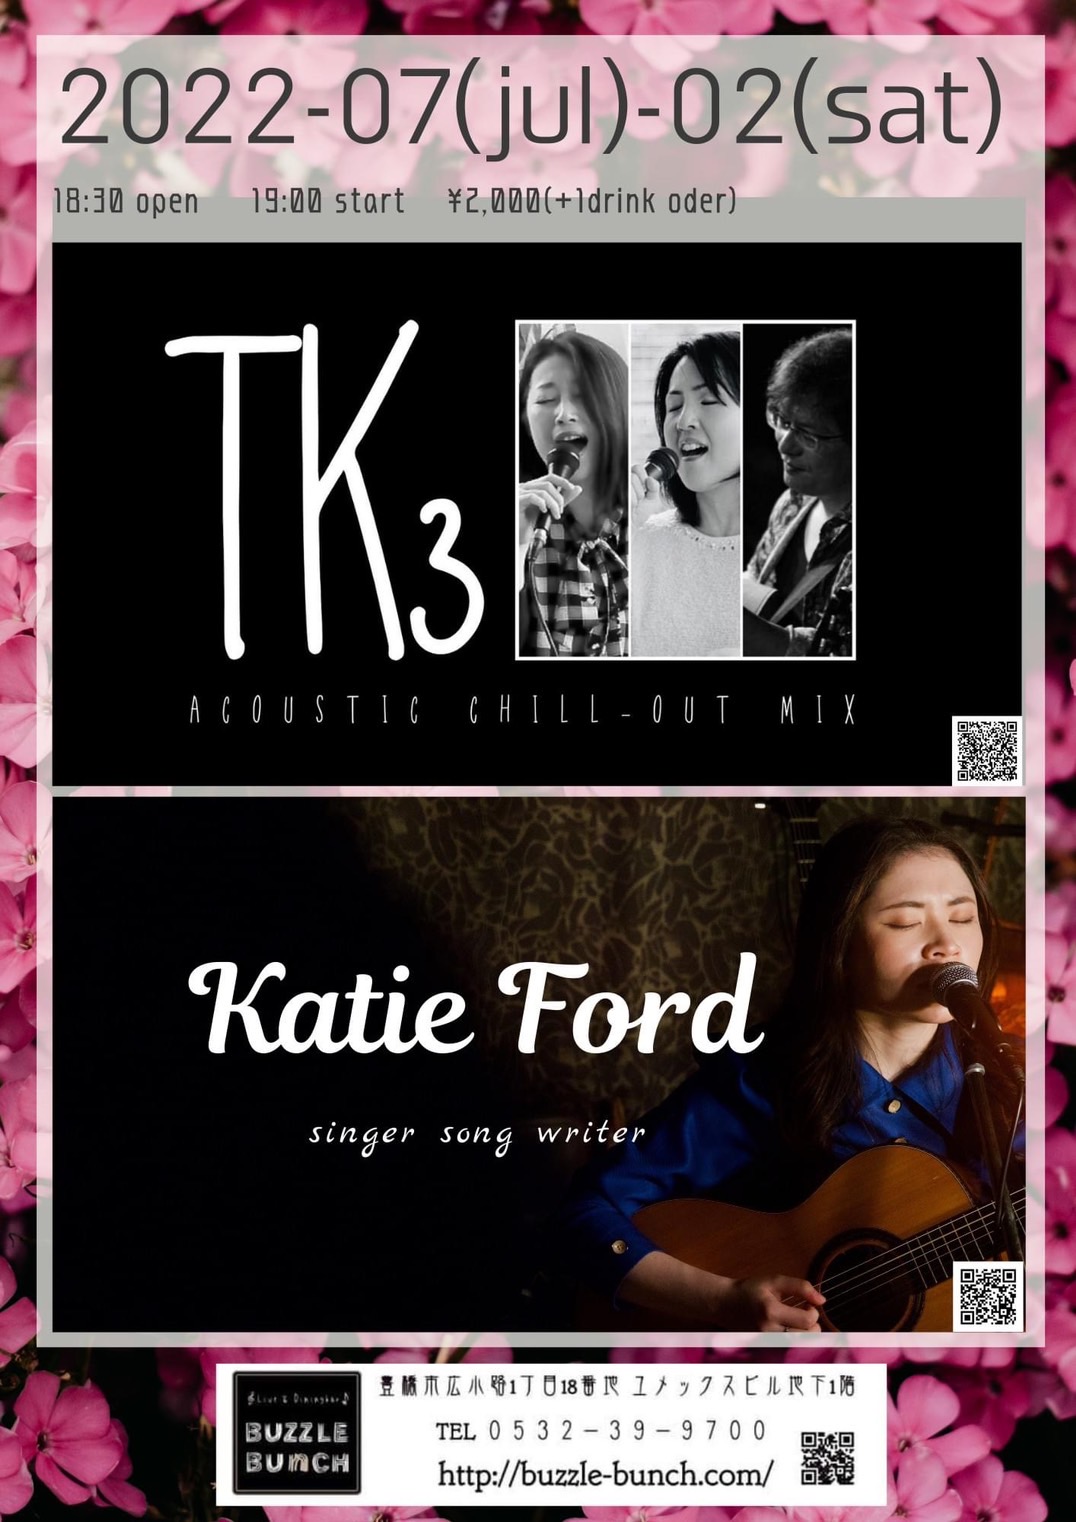 2022年7月2日(土)  ACOUSTIC CHILL OUT-MIX TK3 & SINGER SONG WRITER Katie Ford